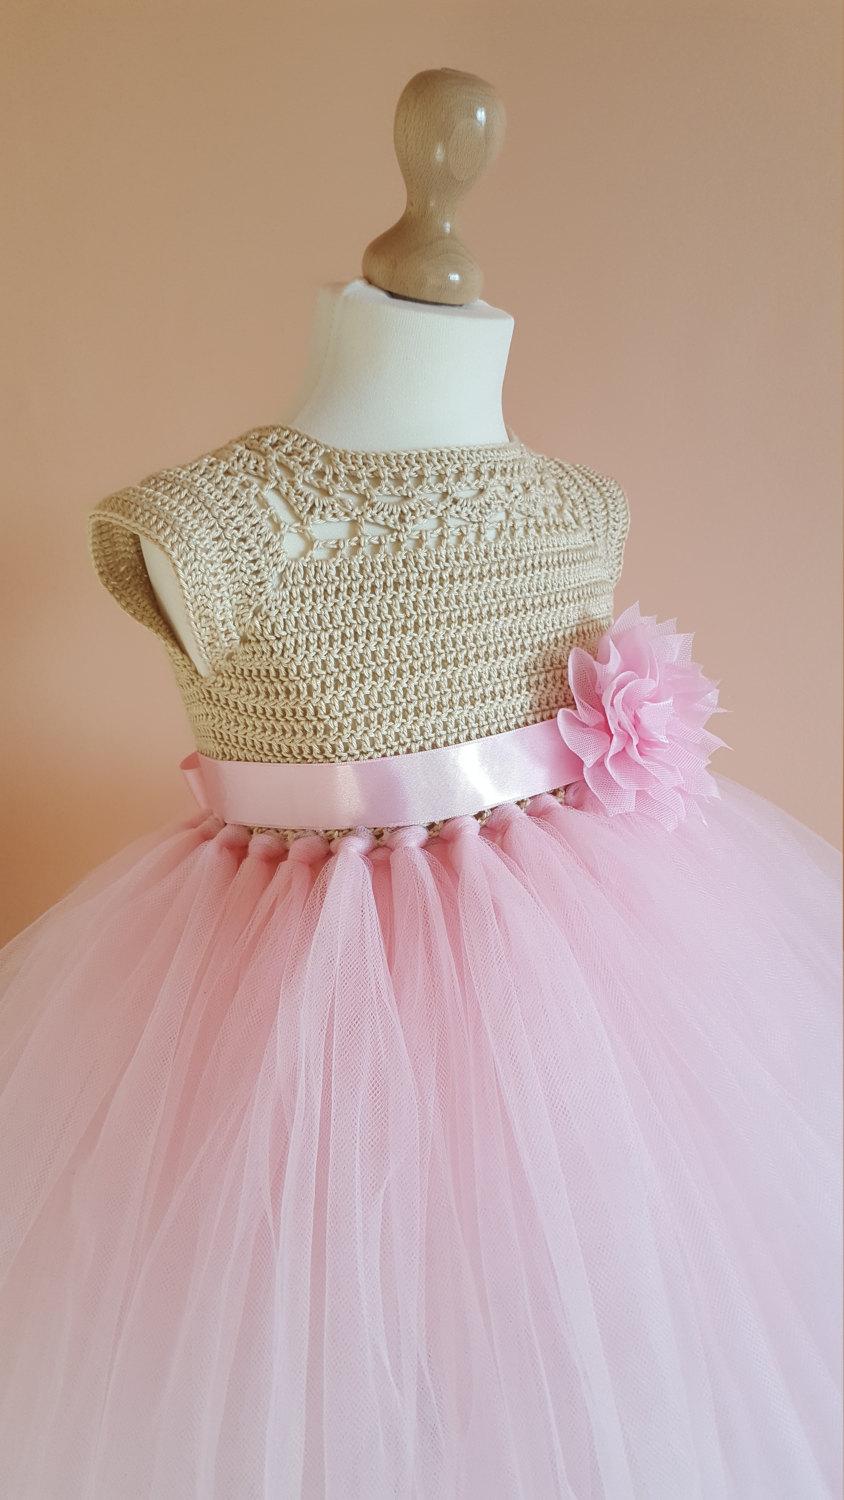 Hochzeit - tutu dress, crochet dress, crochet yoke, princess dress, bridesmaid dress,gold dress, baby dress, toddler dress, baptism dress, flower girl